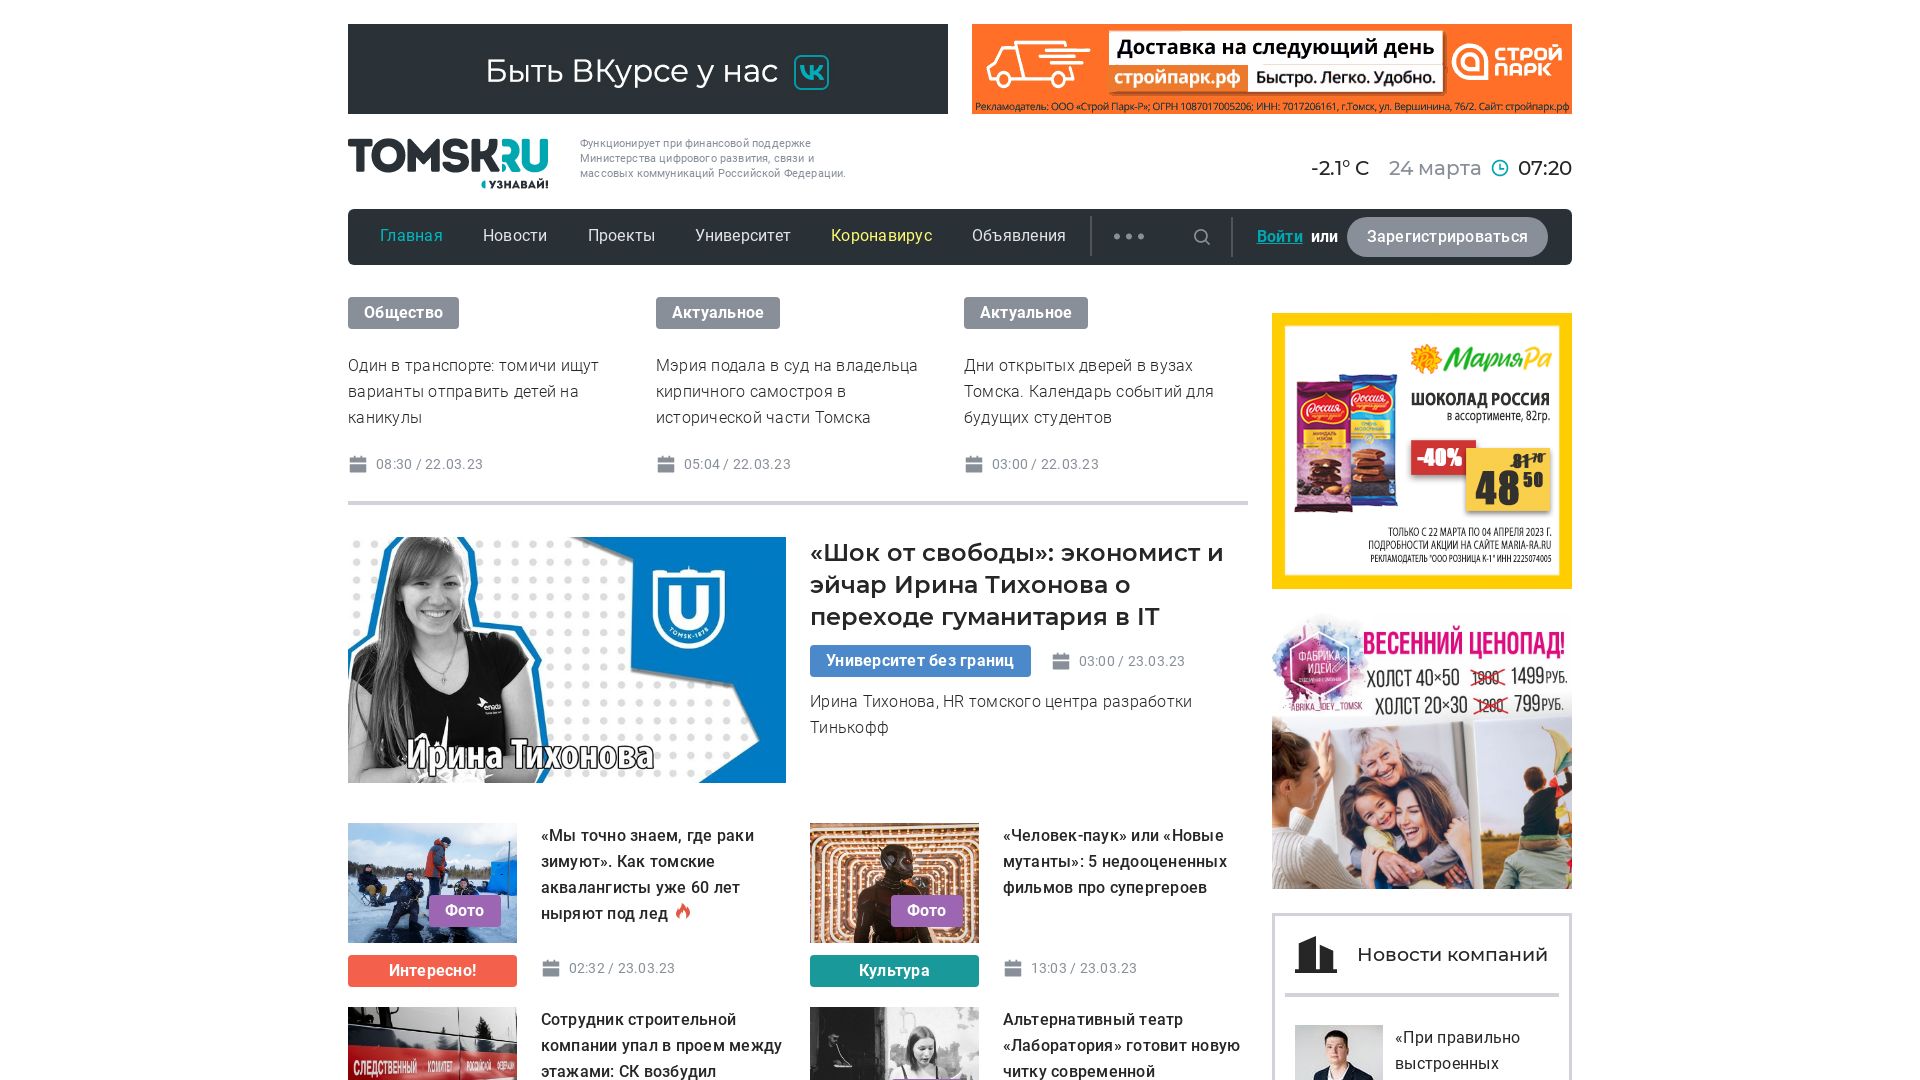 État du site web tomsk.ru est   EN LIGNE